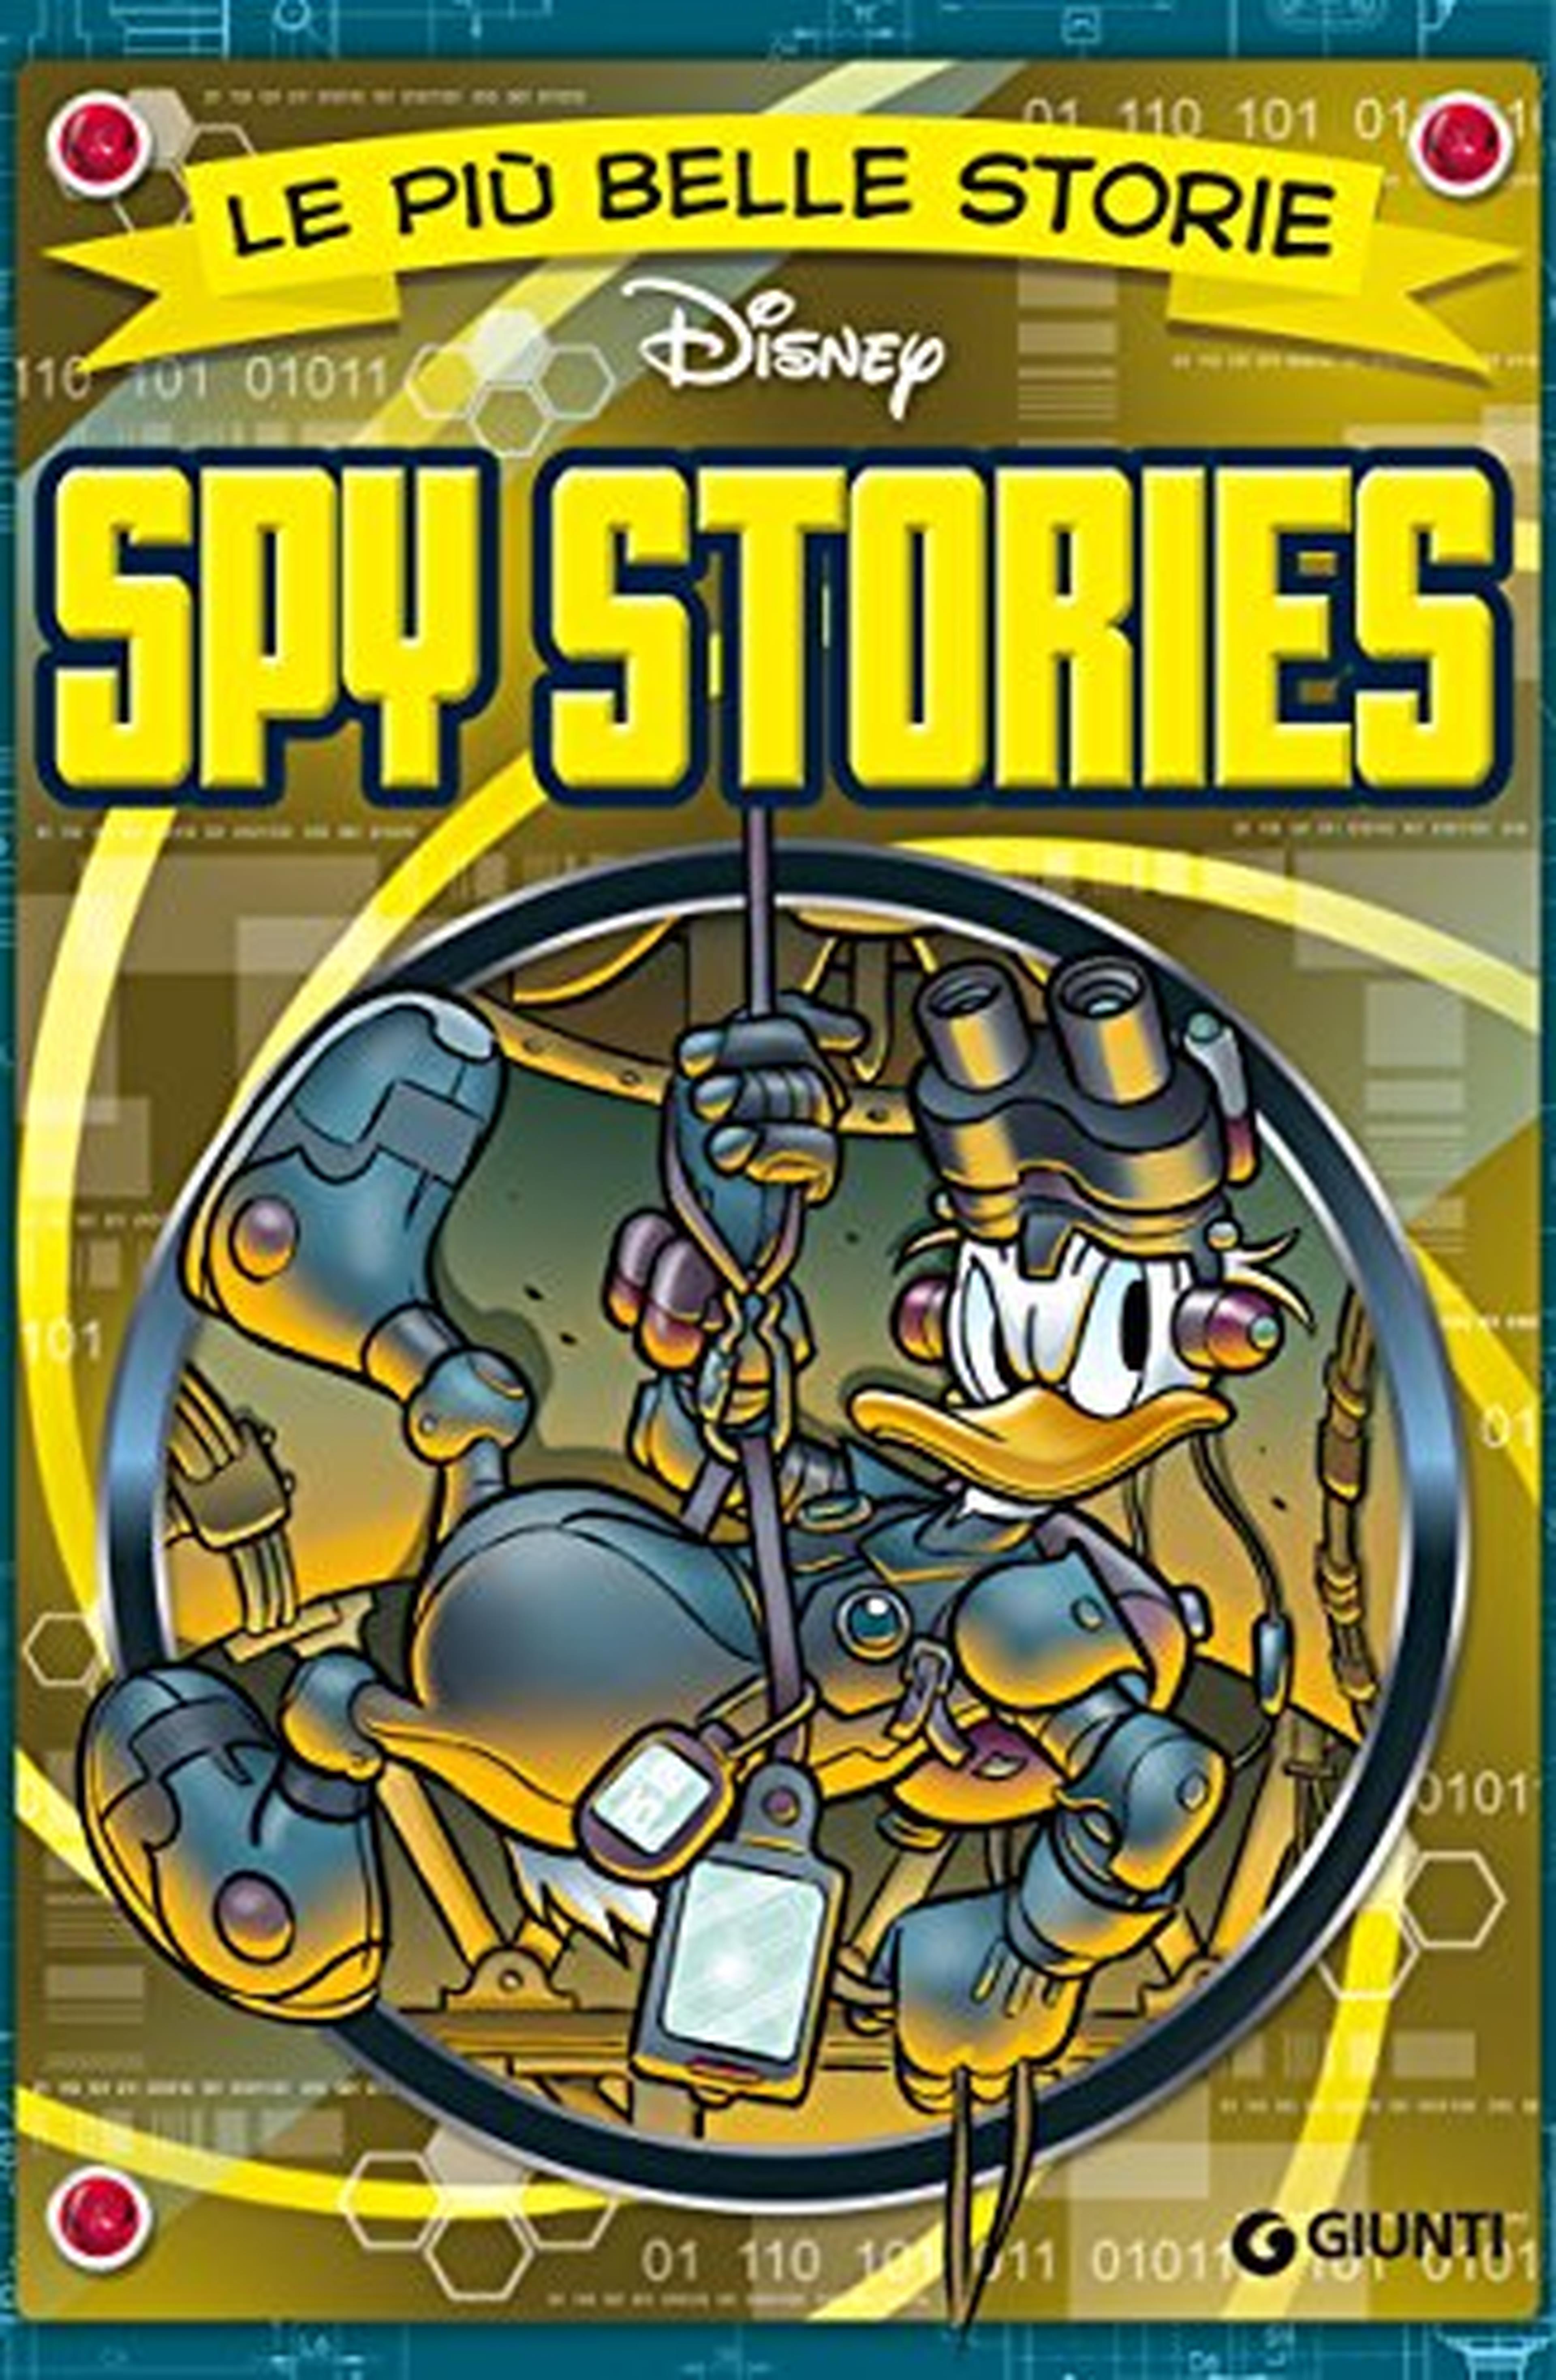 Le più belle storie Spy Stories (Storie a fumetti Vol. 45)